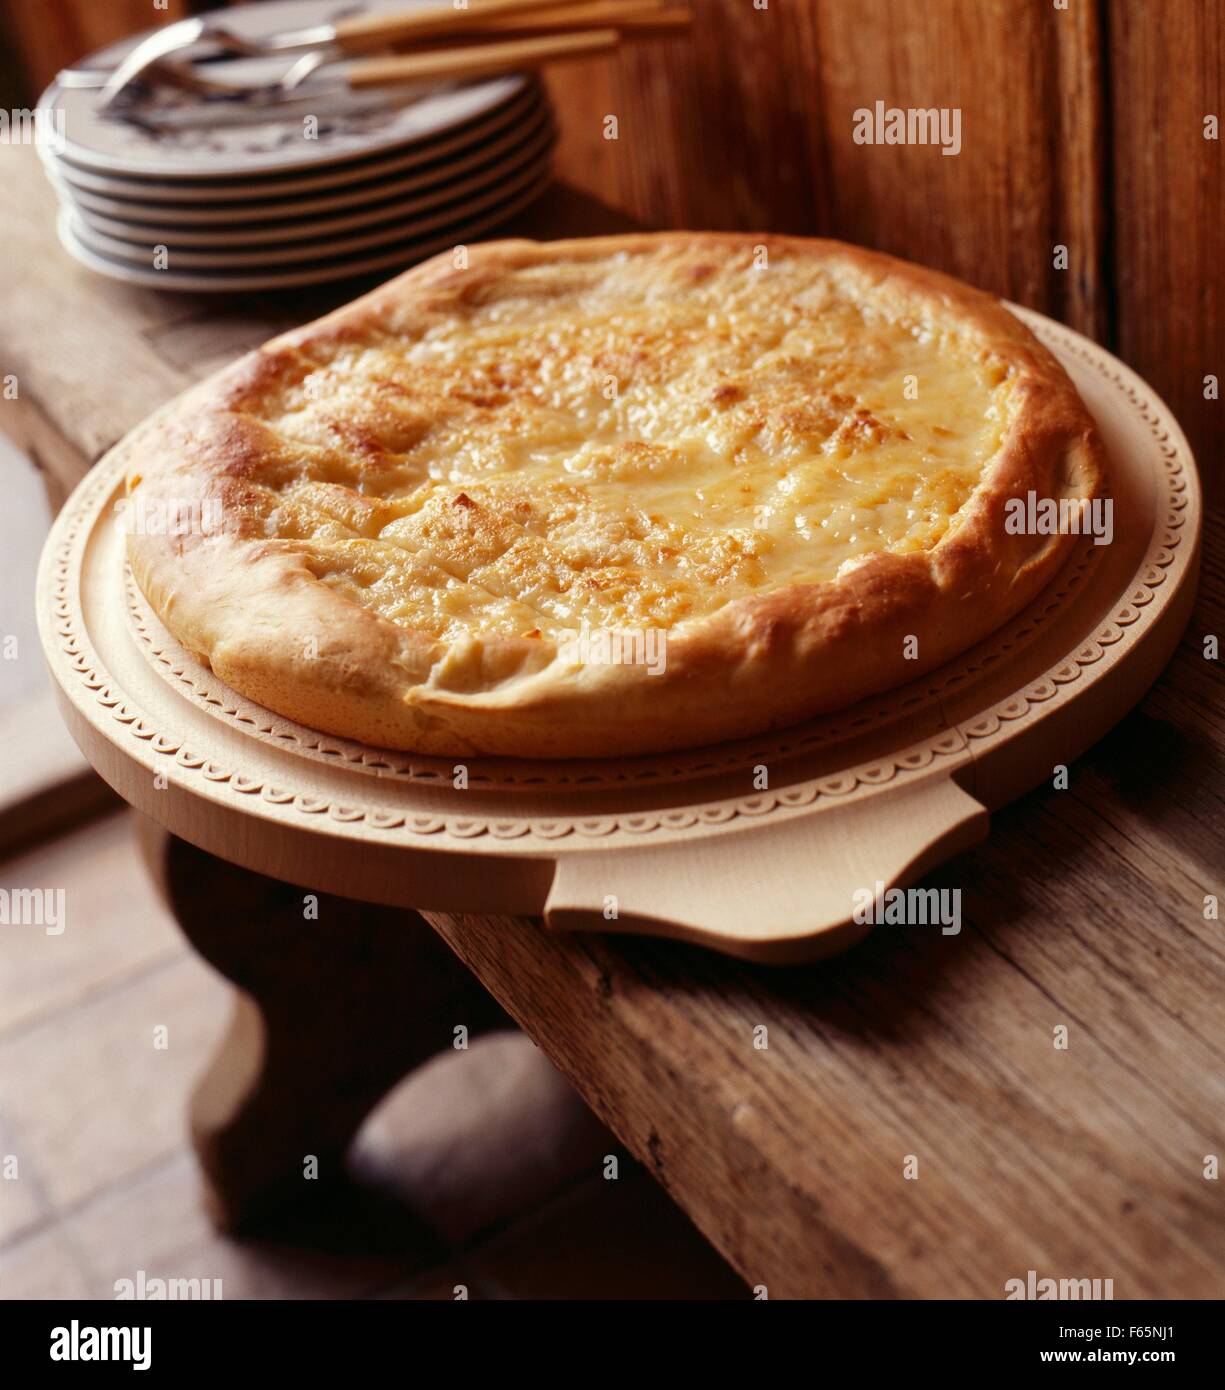 Cream and cheese tart Stock Photo